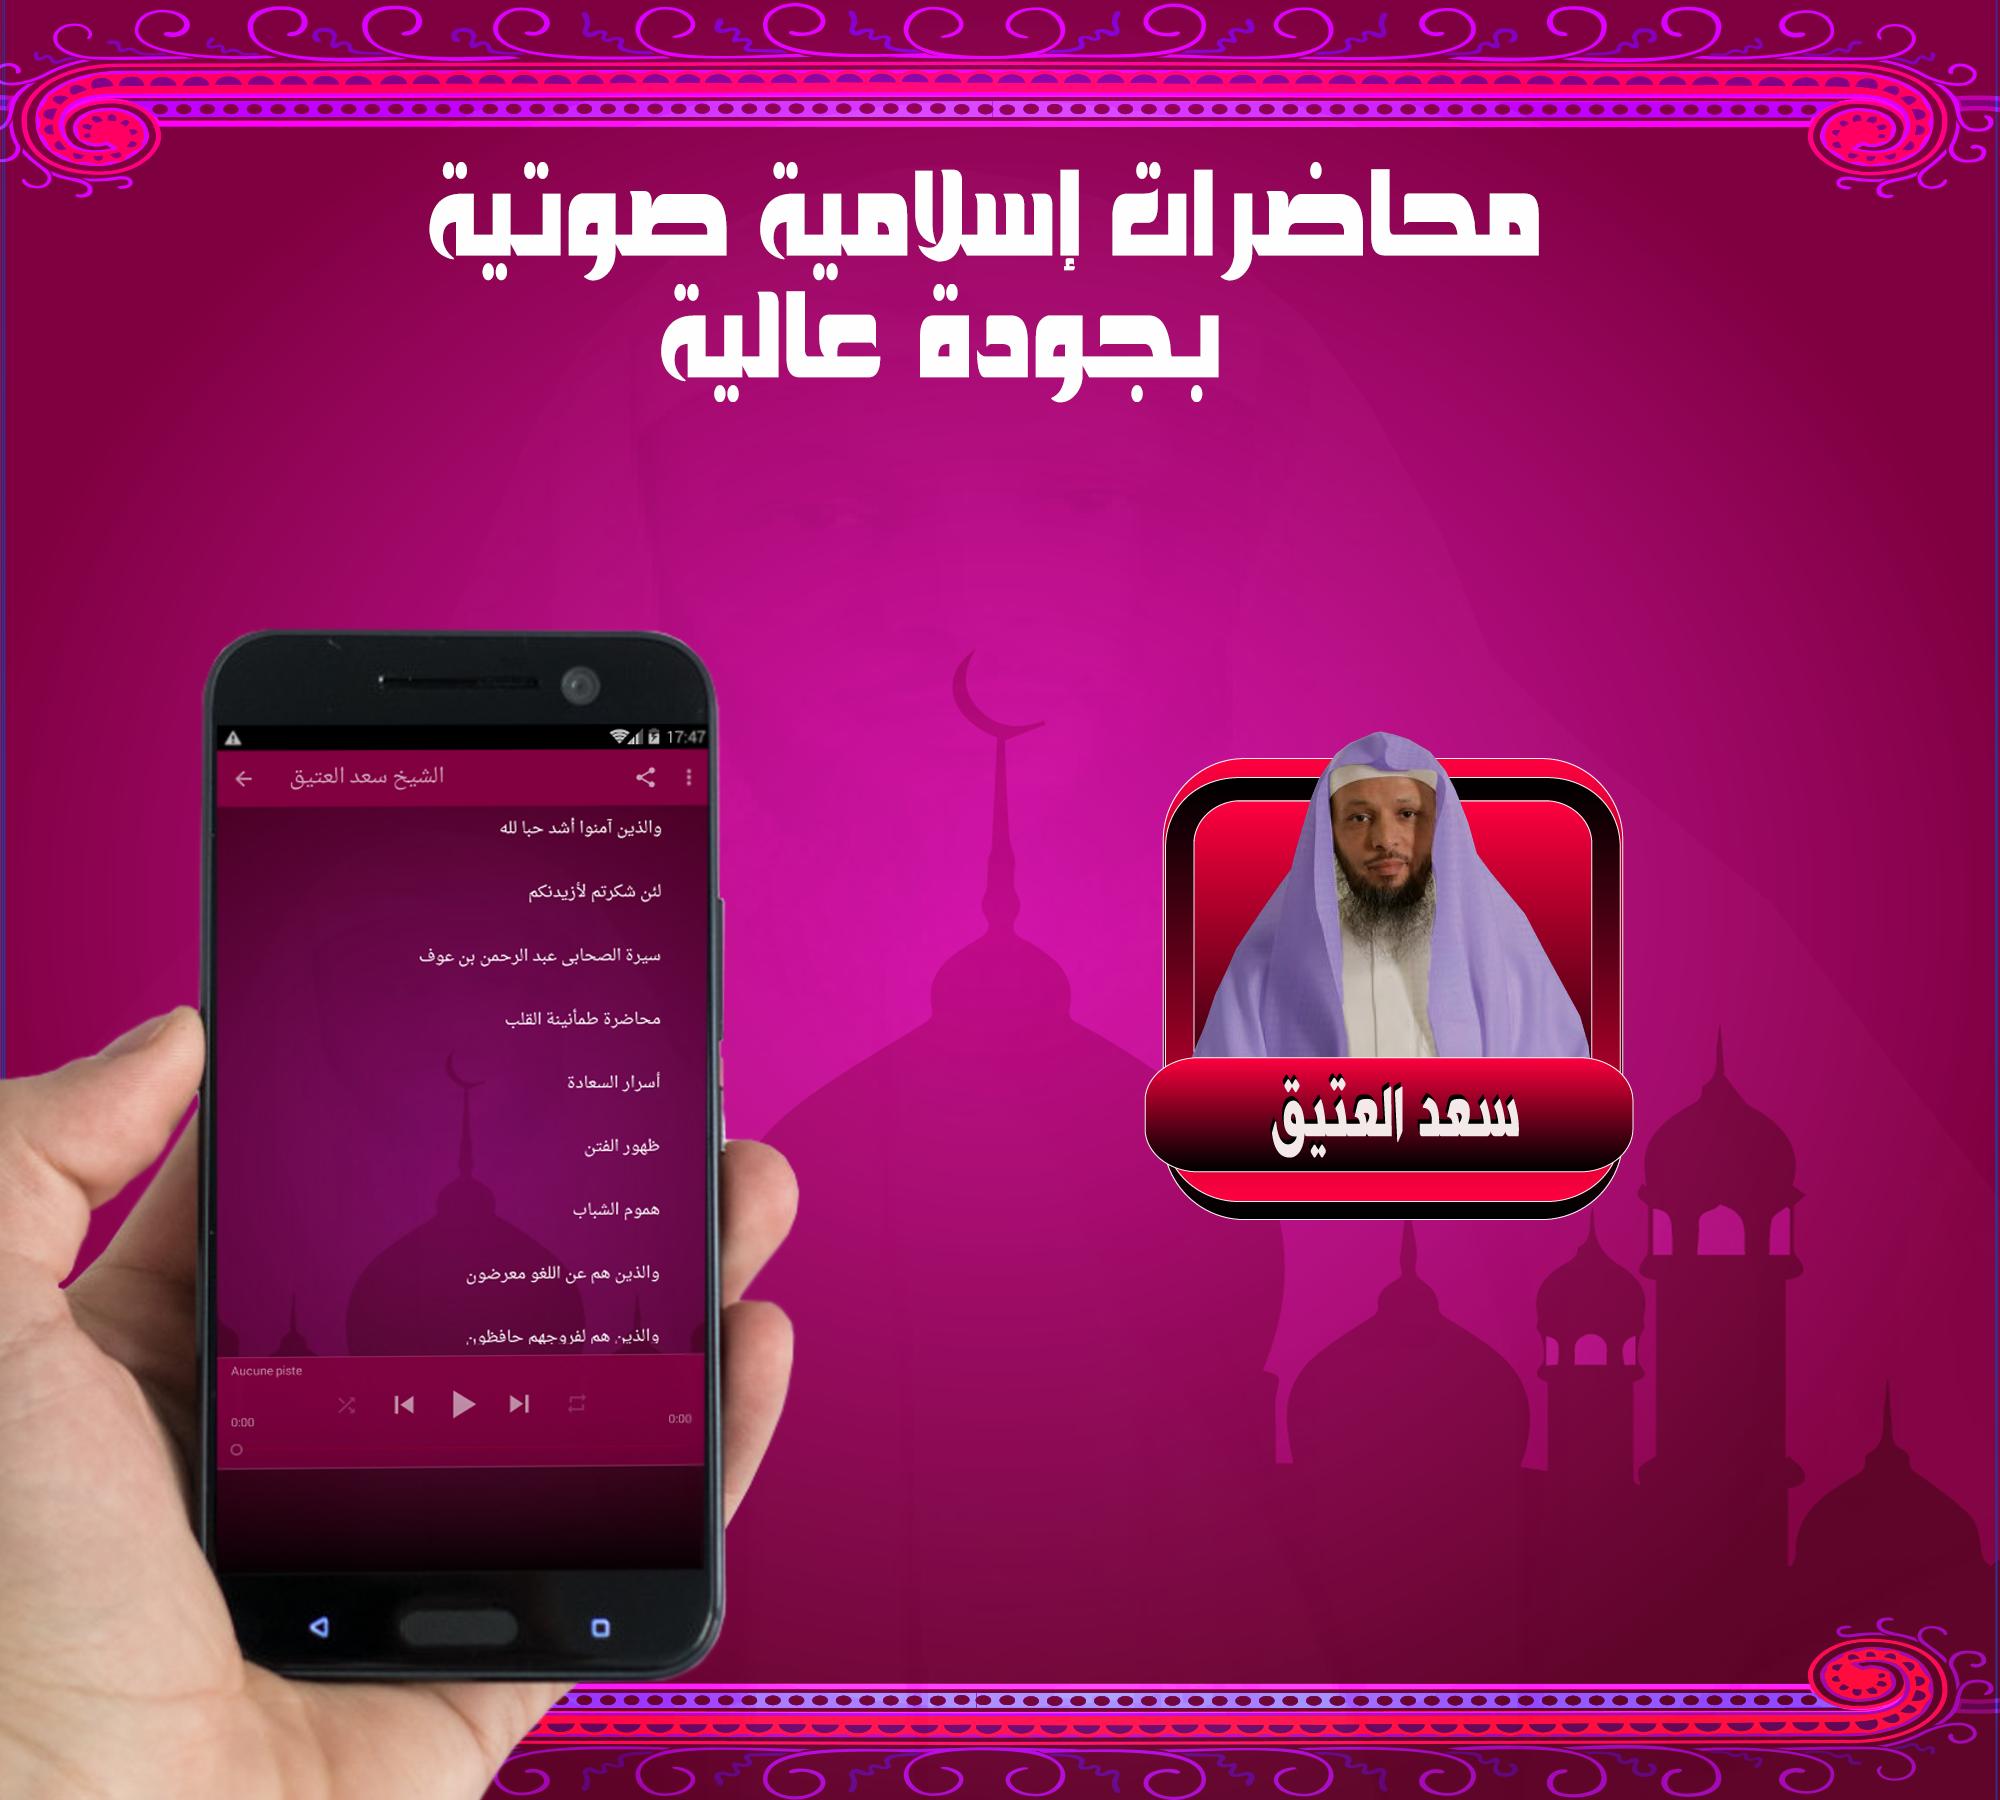 سعد العتيق L محاضرات دينية صوتية بدون نت For Android Apk Download